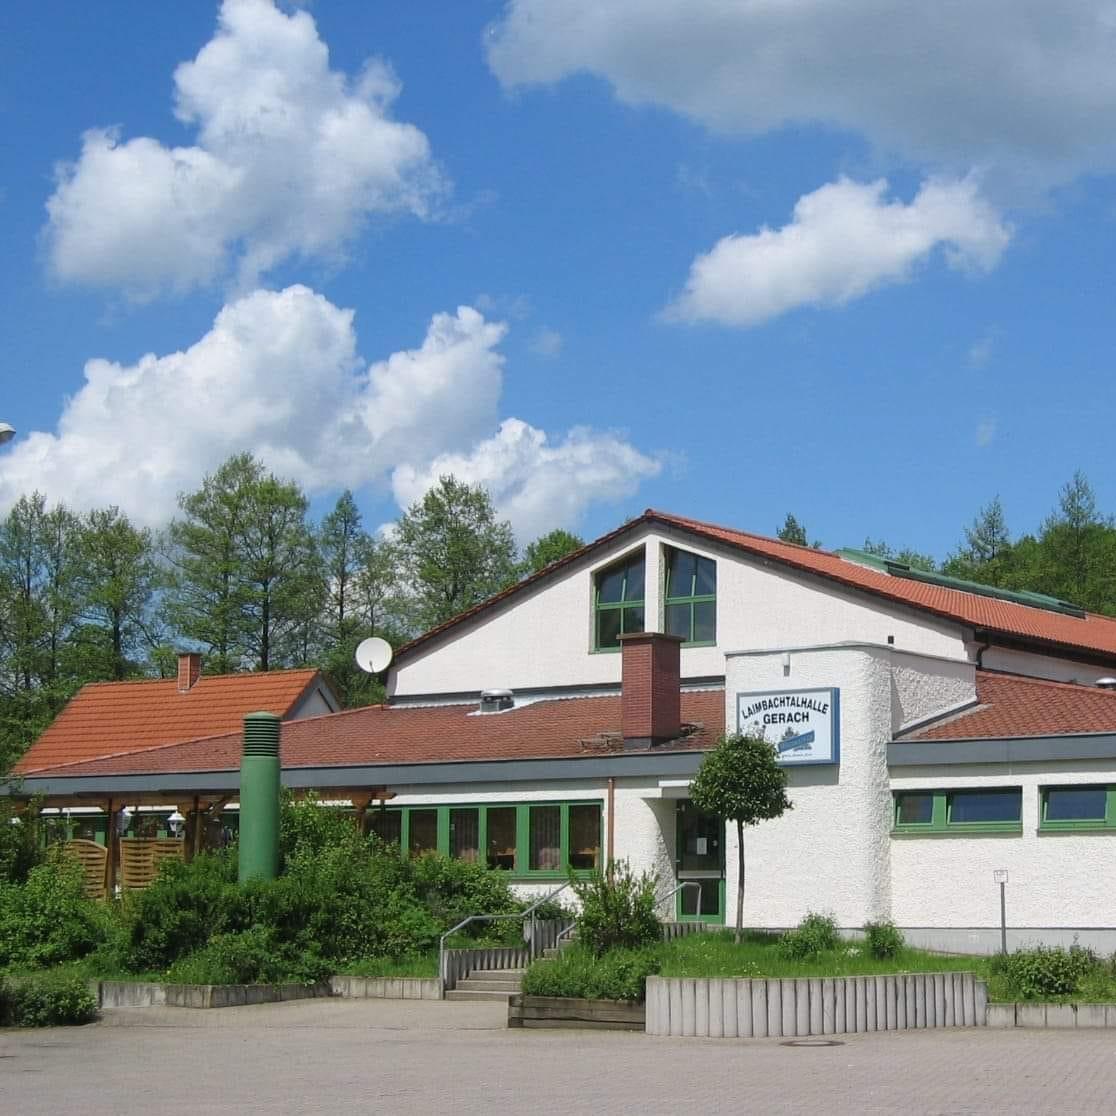 Restaurant "Gasthaus  Zum Küpfl  - Laimbachtalhalle" in Gerach